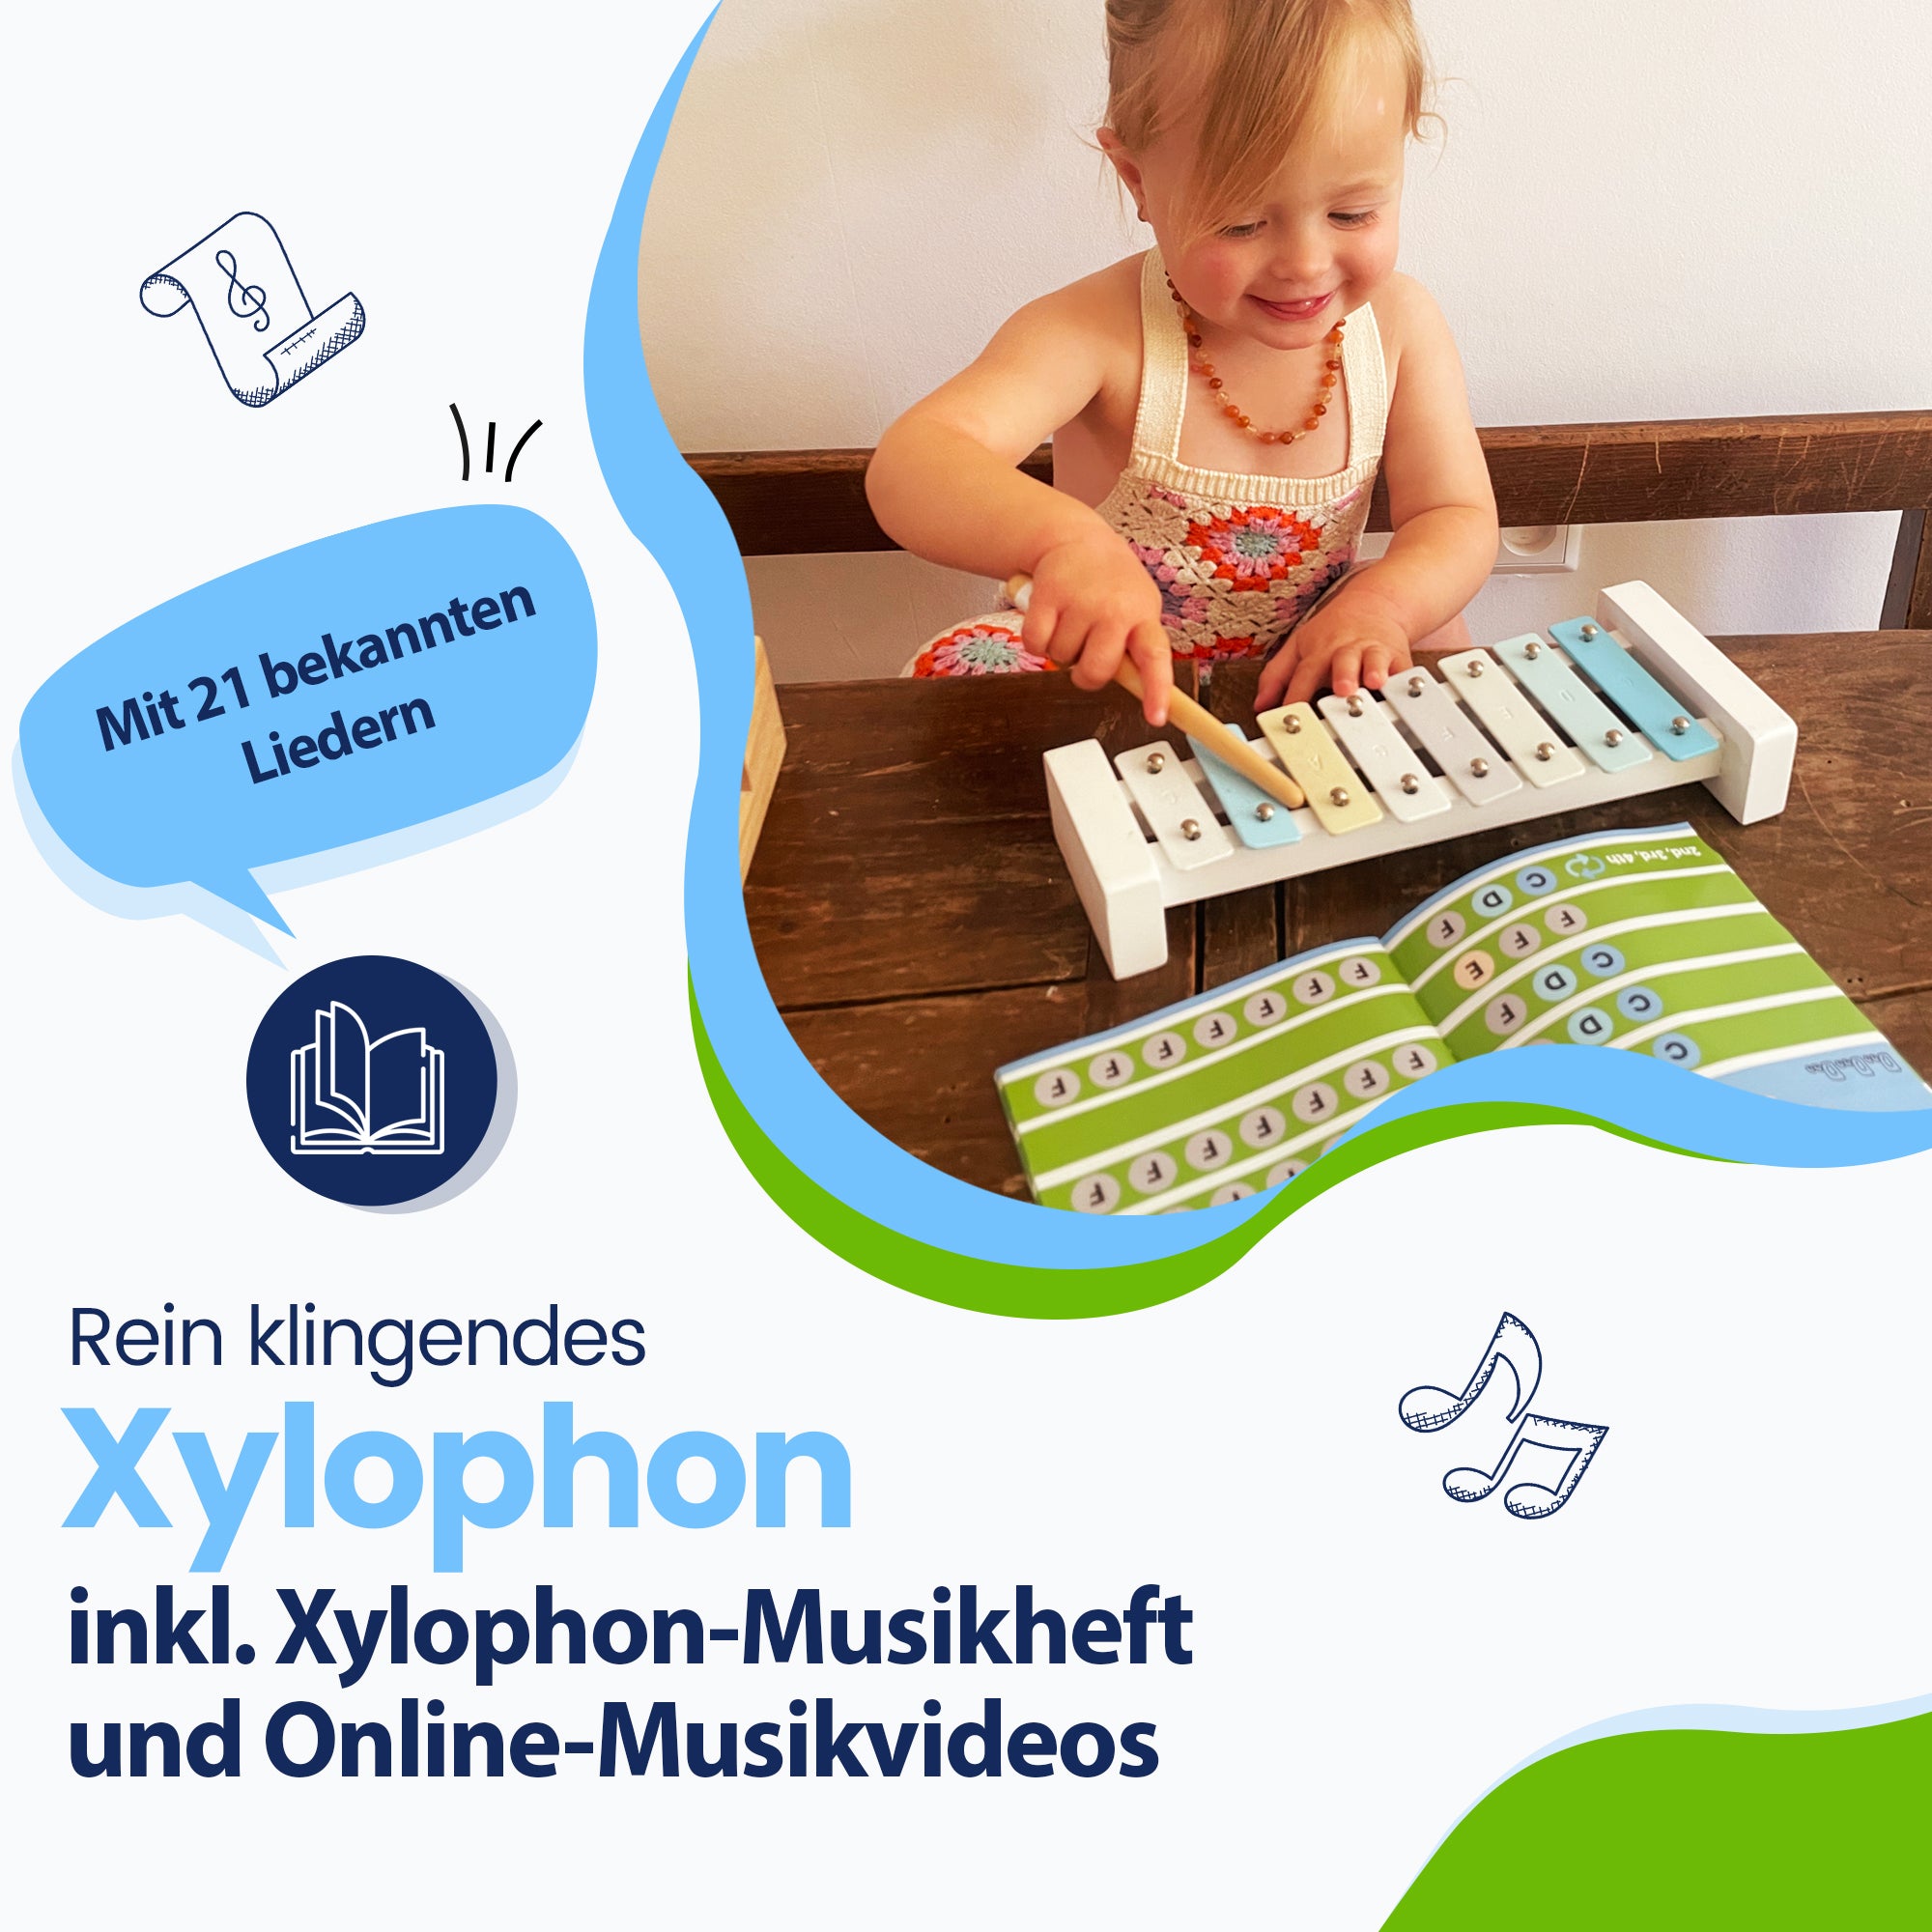 Mit 21 bekannten Liedern! Rein klingendes Xylophon – inkl. Xylophon-Musikheft und Online-Musikvideos